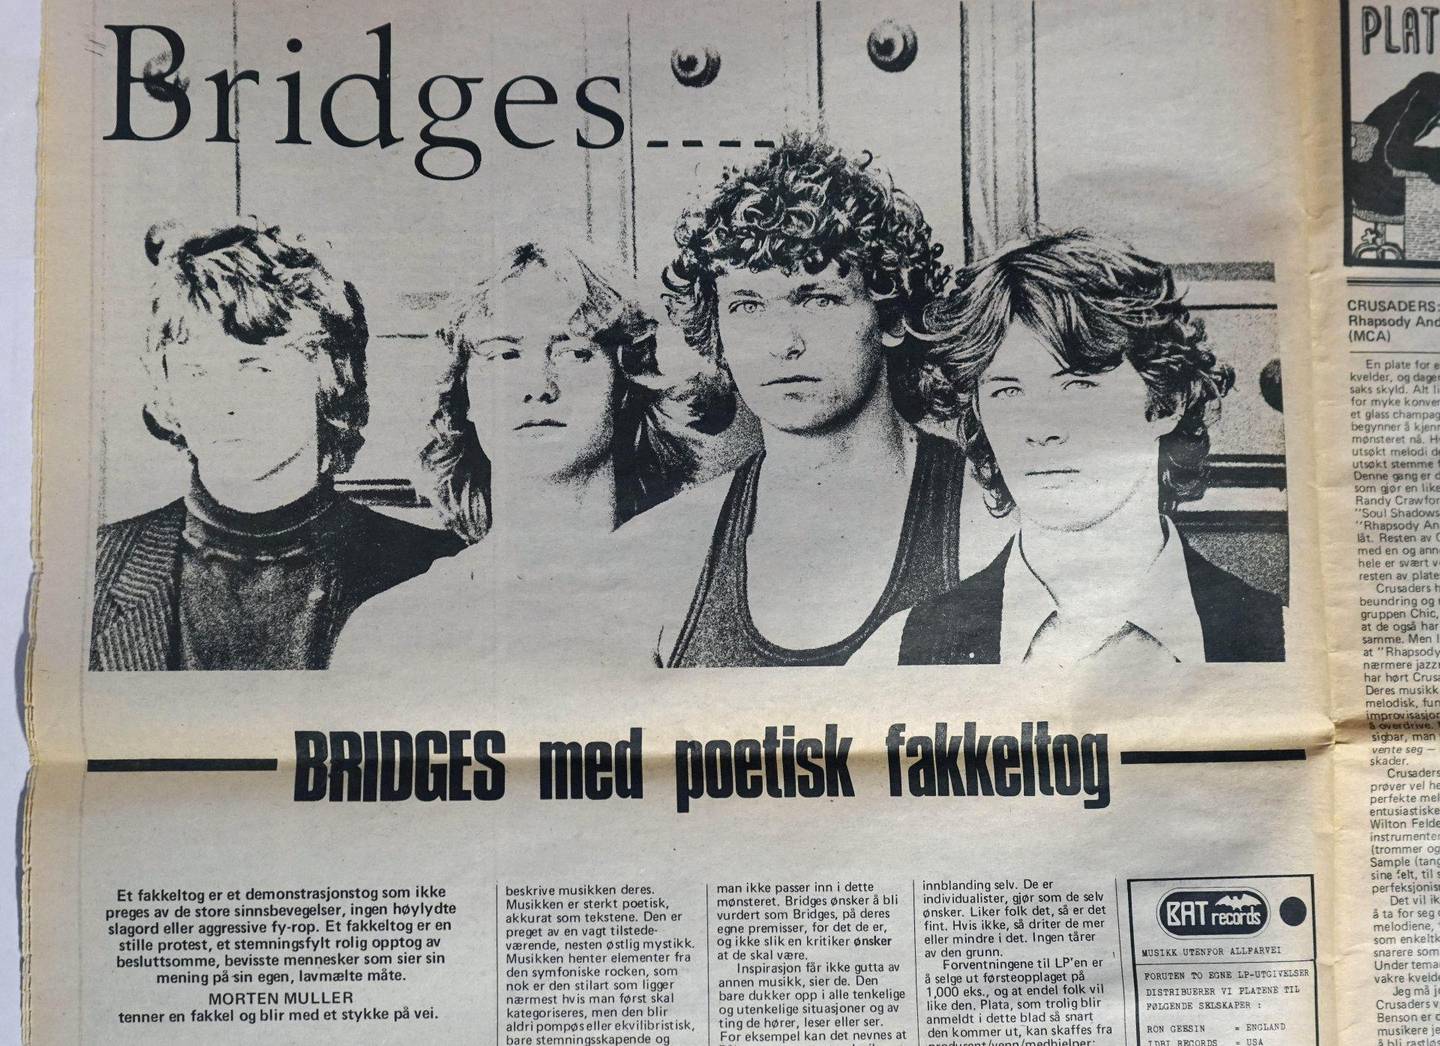 Bridges i Nye Takter i oktober 1980. FOTO: ROCKHEIM